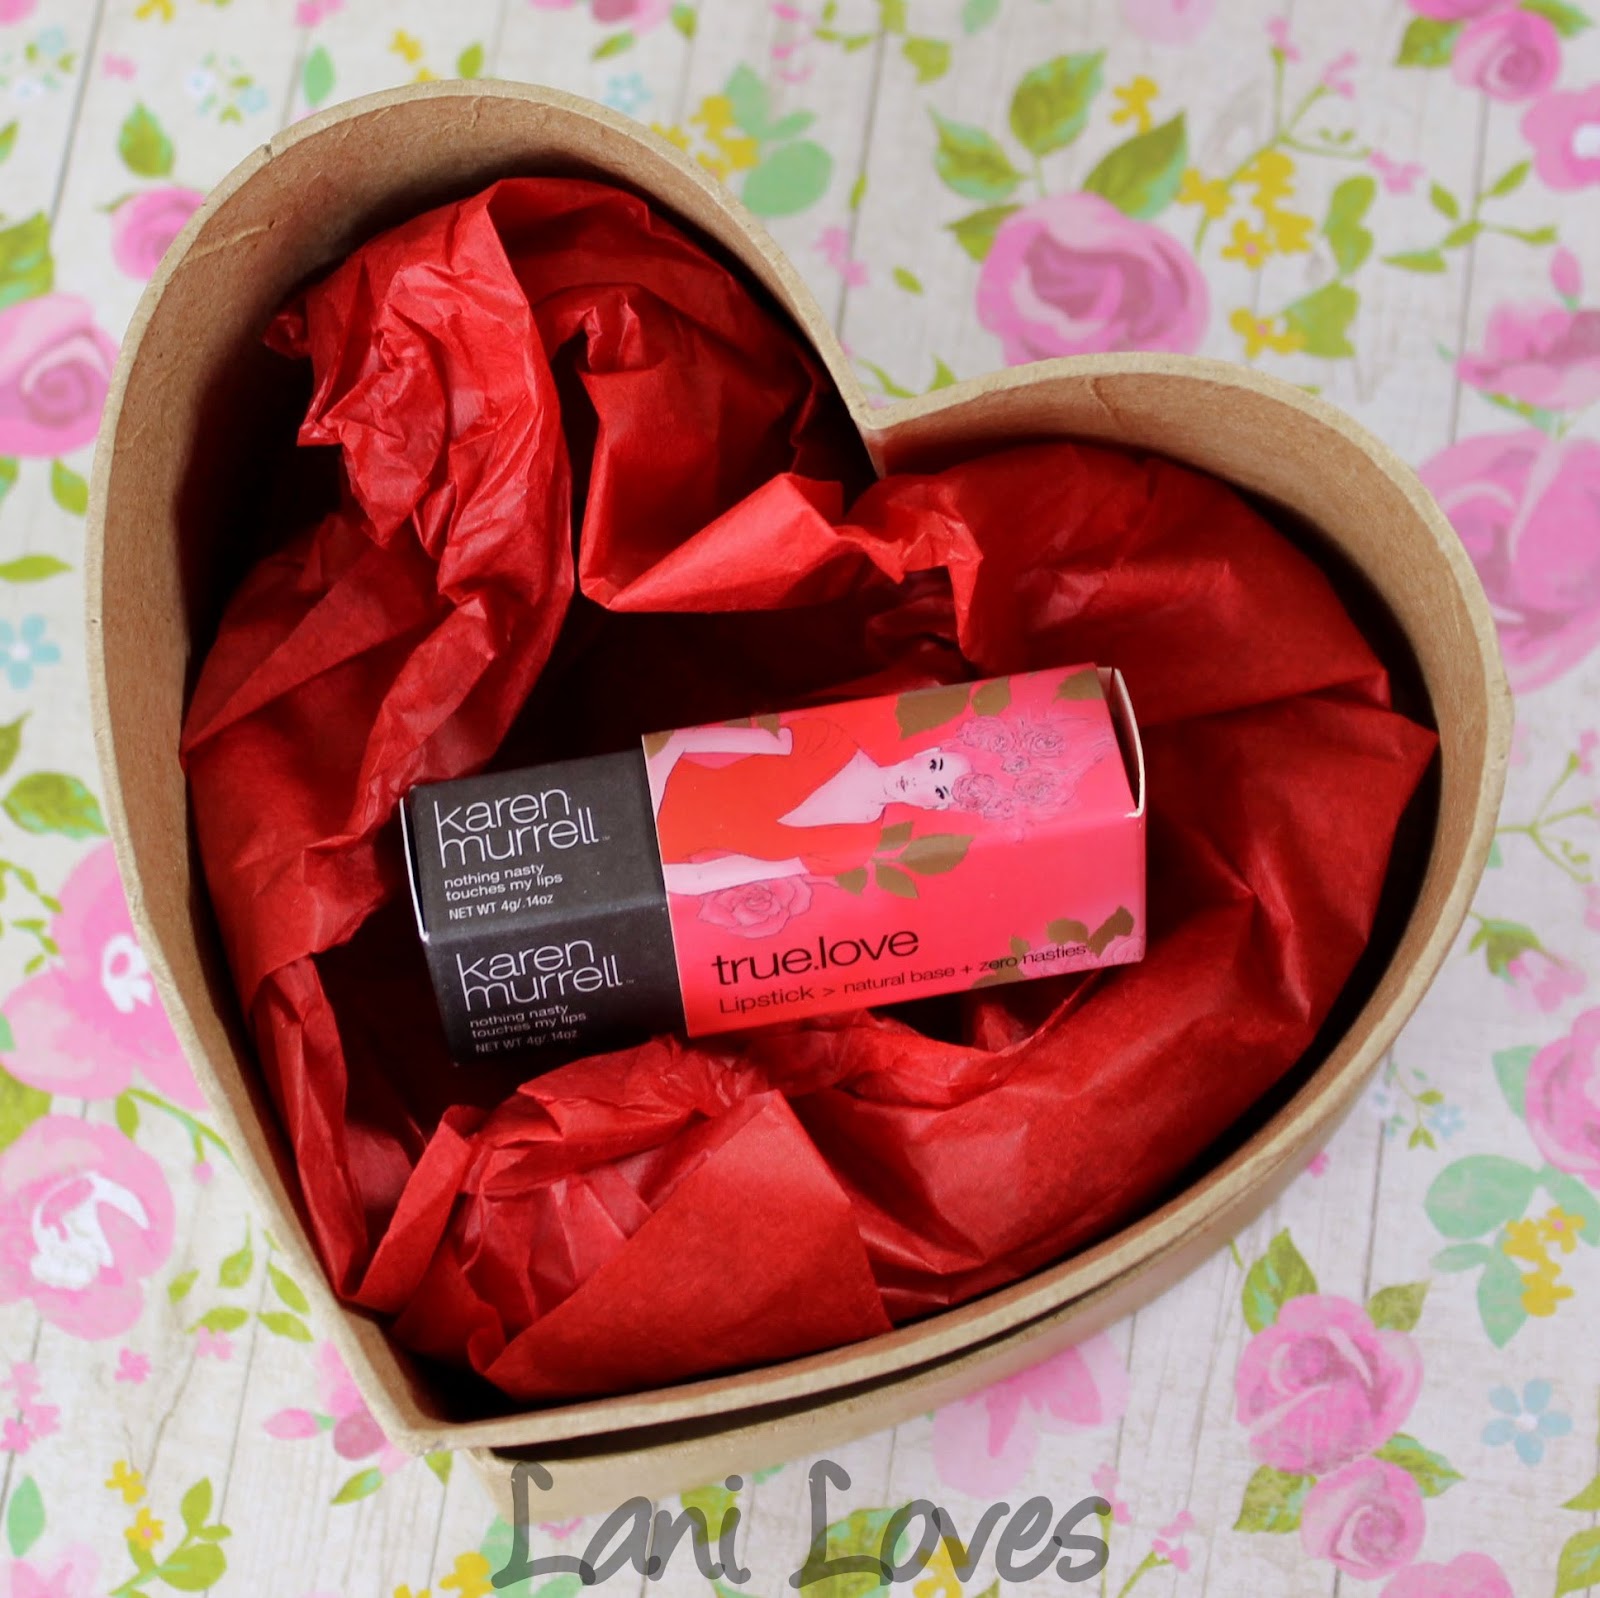 Karen Murrell True Love Lipstick Swatches & Review